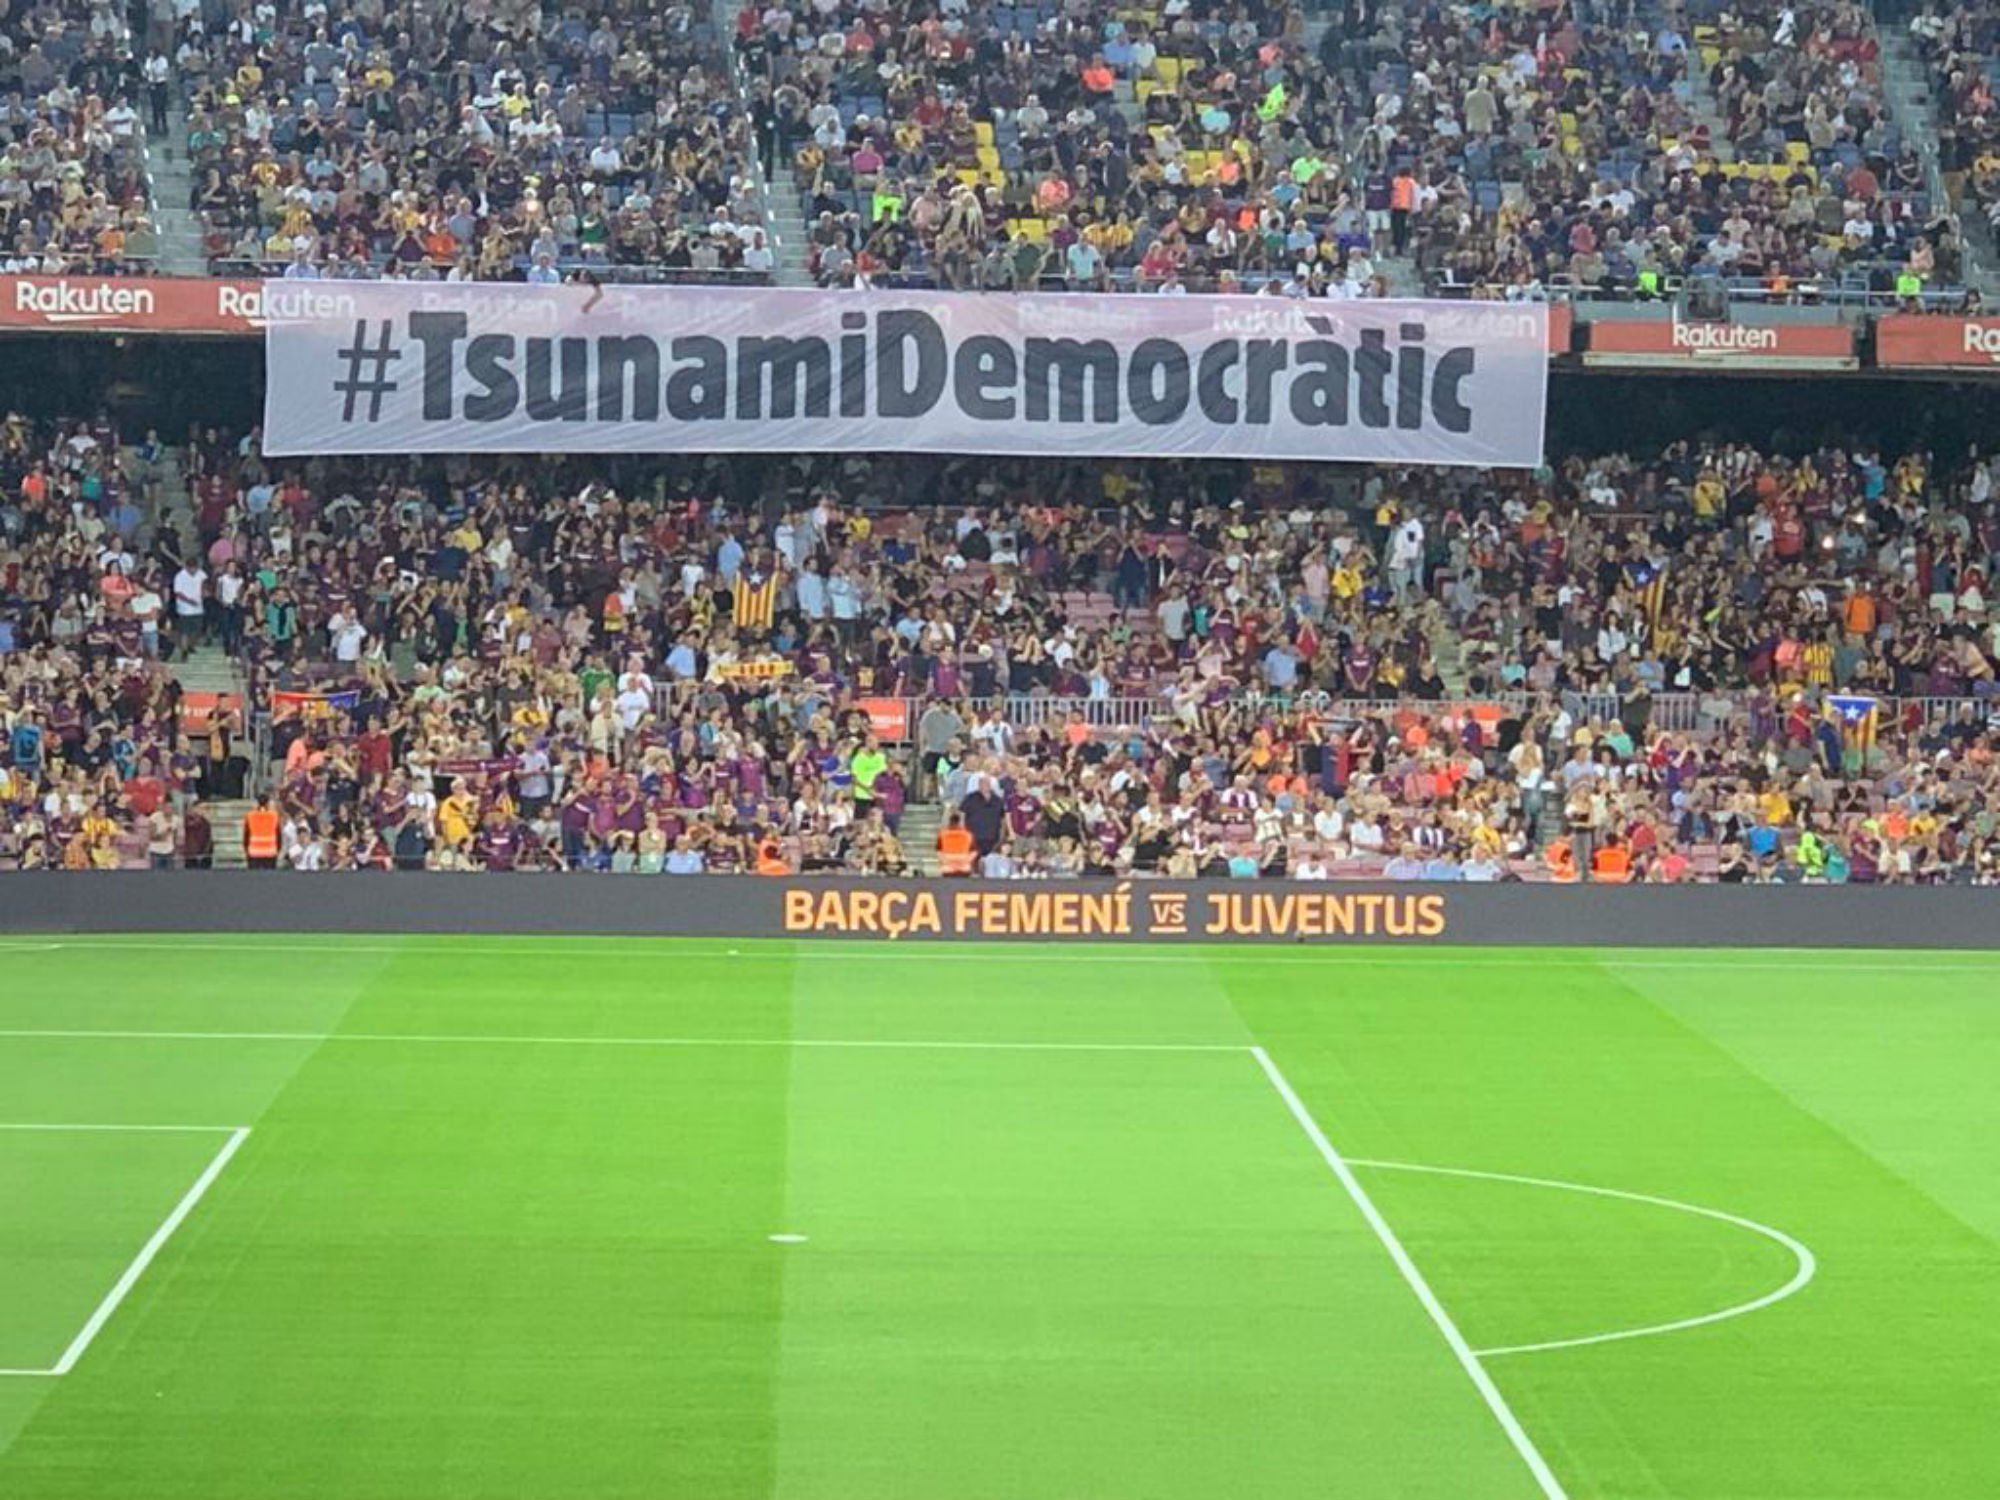 El fil de Tsunami Democràtic explicant què farà al Barça-Madrid